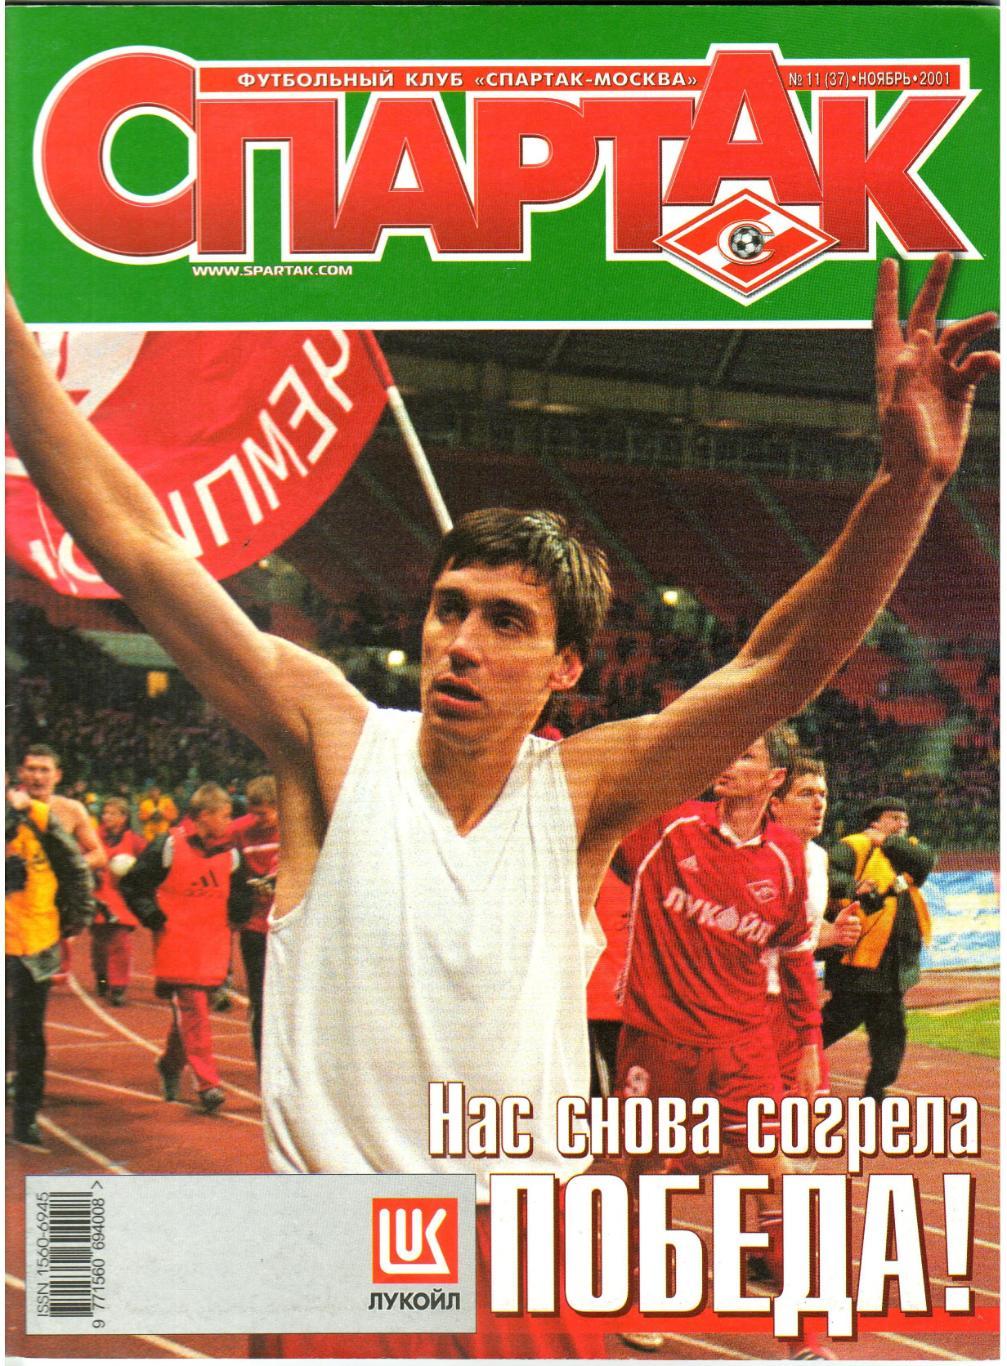 Журнал Спартак №11(37) Ноябрь 2001 Постер Луис Робсон Виктор Соколов В.Гладилин